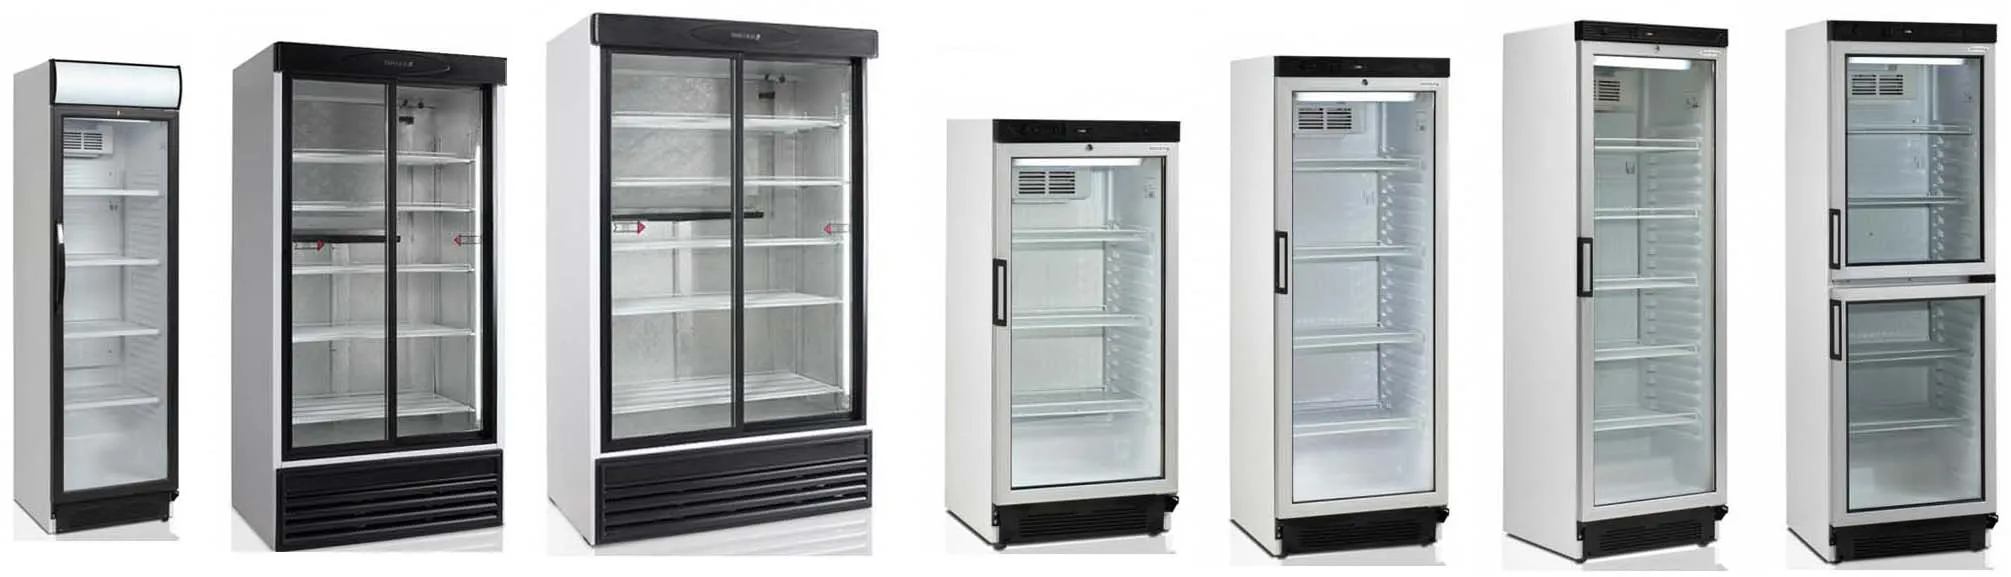 Холодильные шкафы cо стеклянными дверьми DM105-S#3